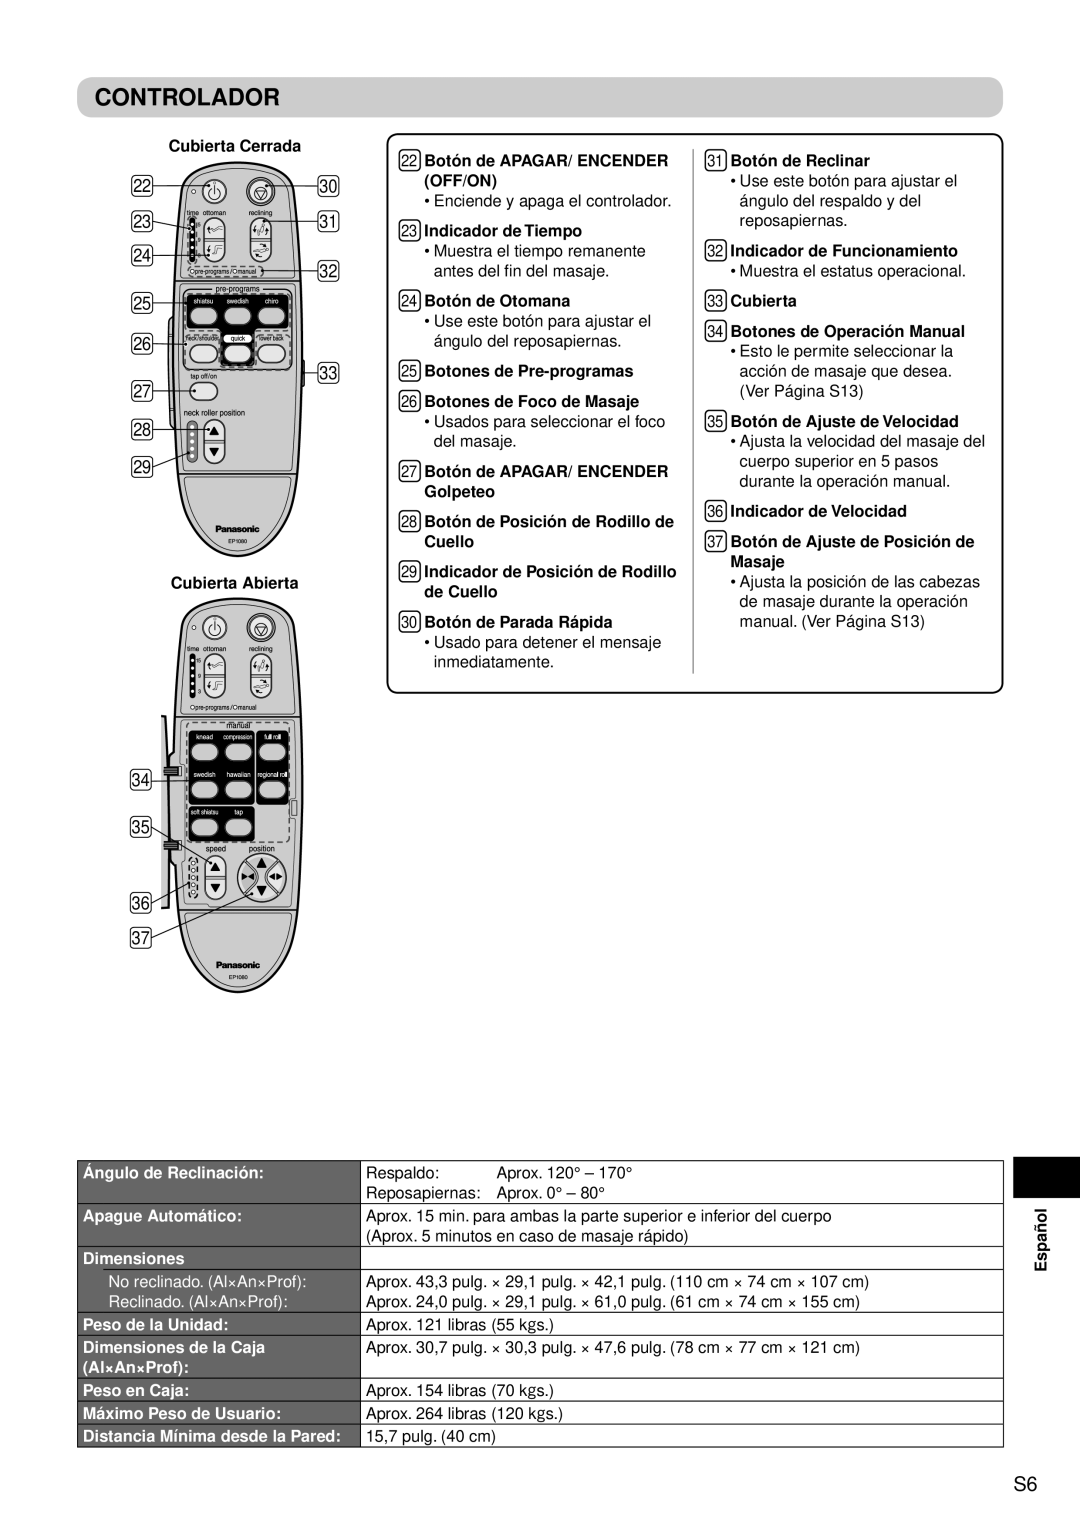 Panasonic EP1080 manual Controlador, Ángulo de Reclinación, Apague Automático, Dimensiones, No reclinado. Al×An×Prof 